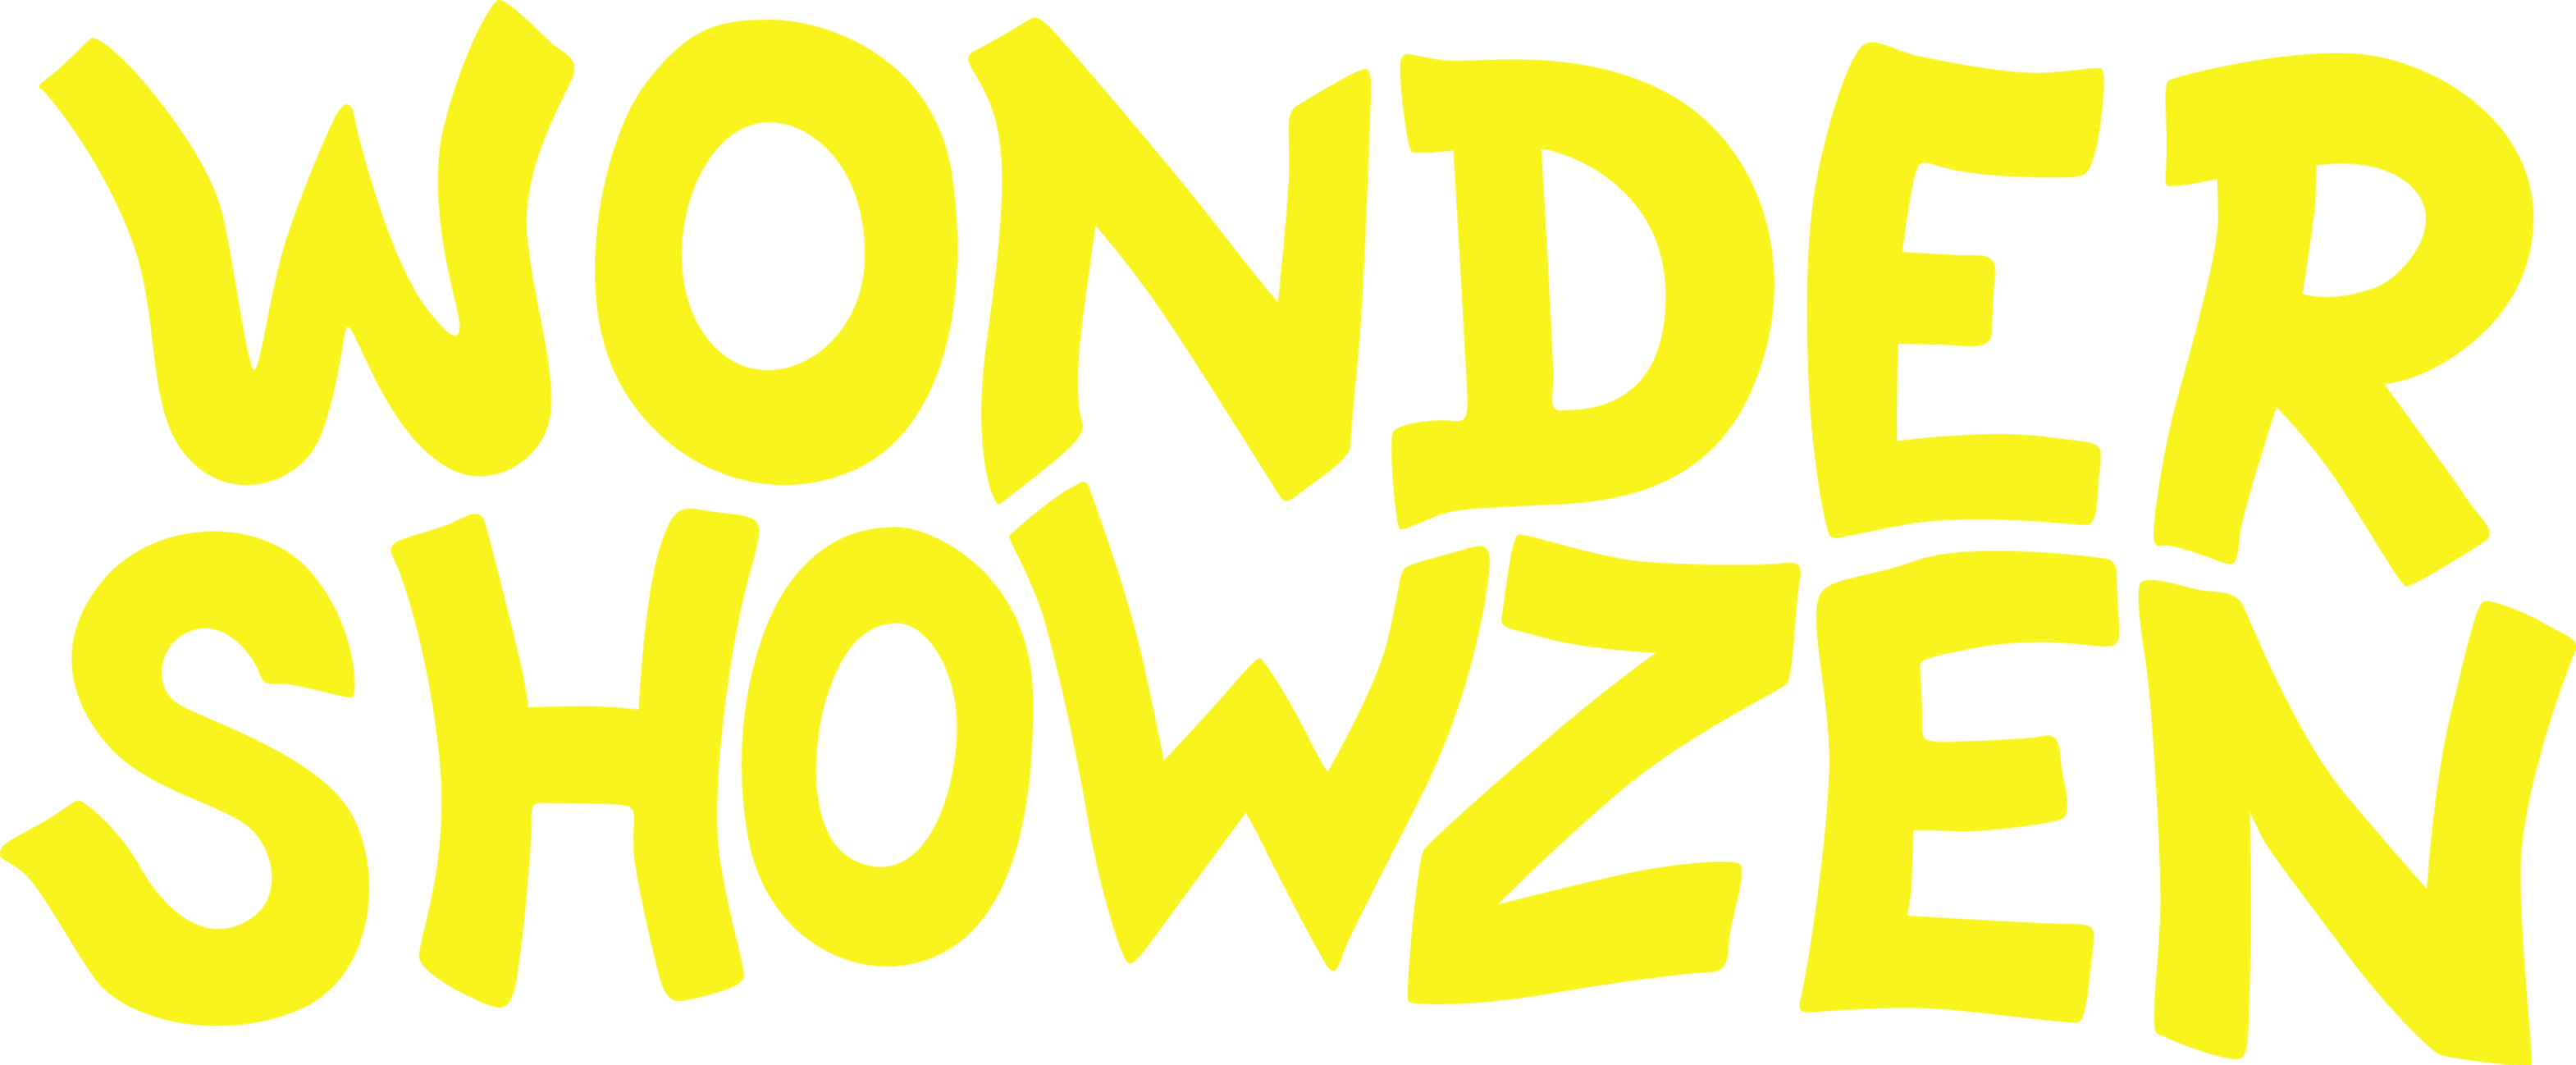 Wonder Showzen logo